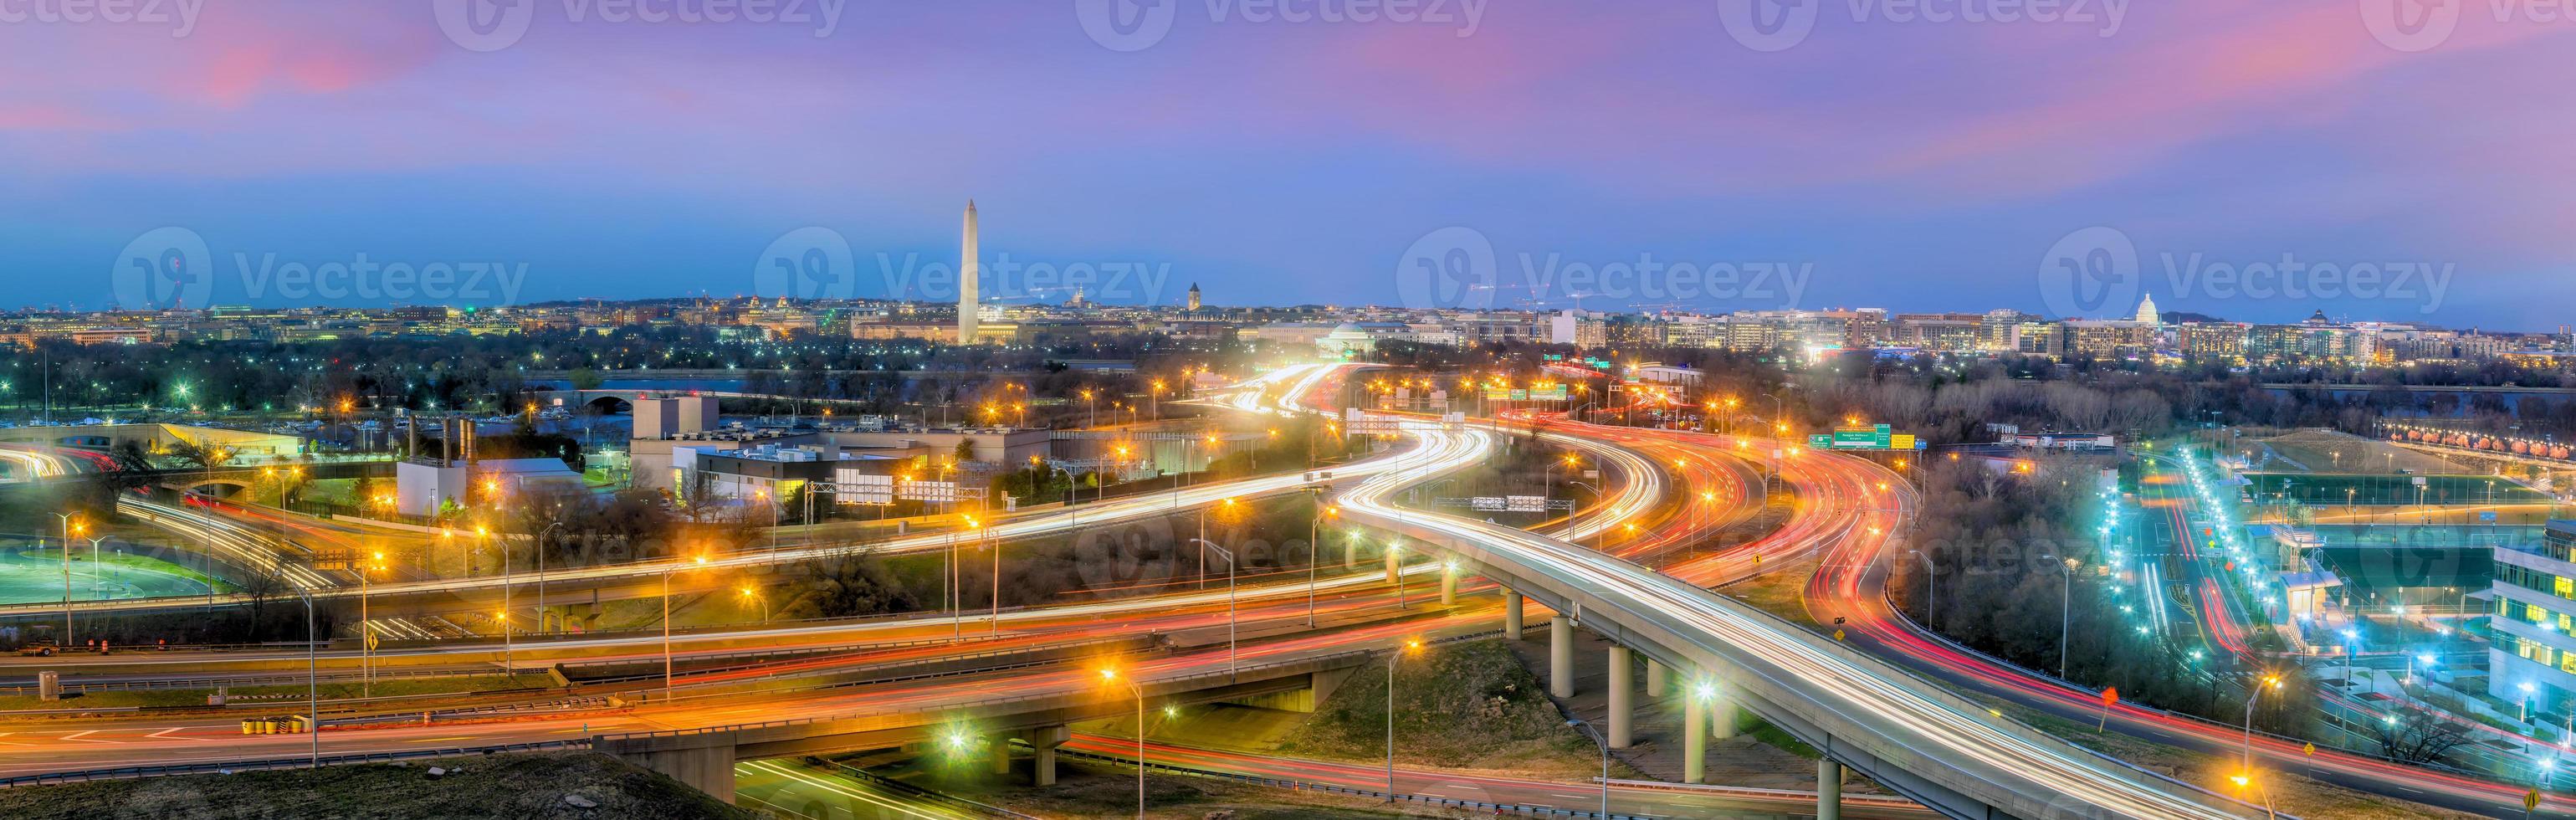 Washington, DC sur les toits de la ville photo